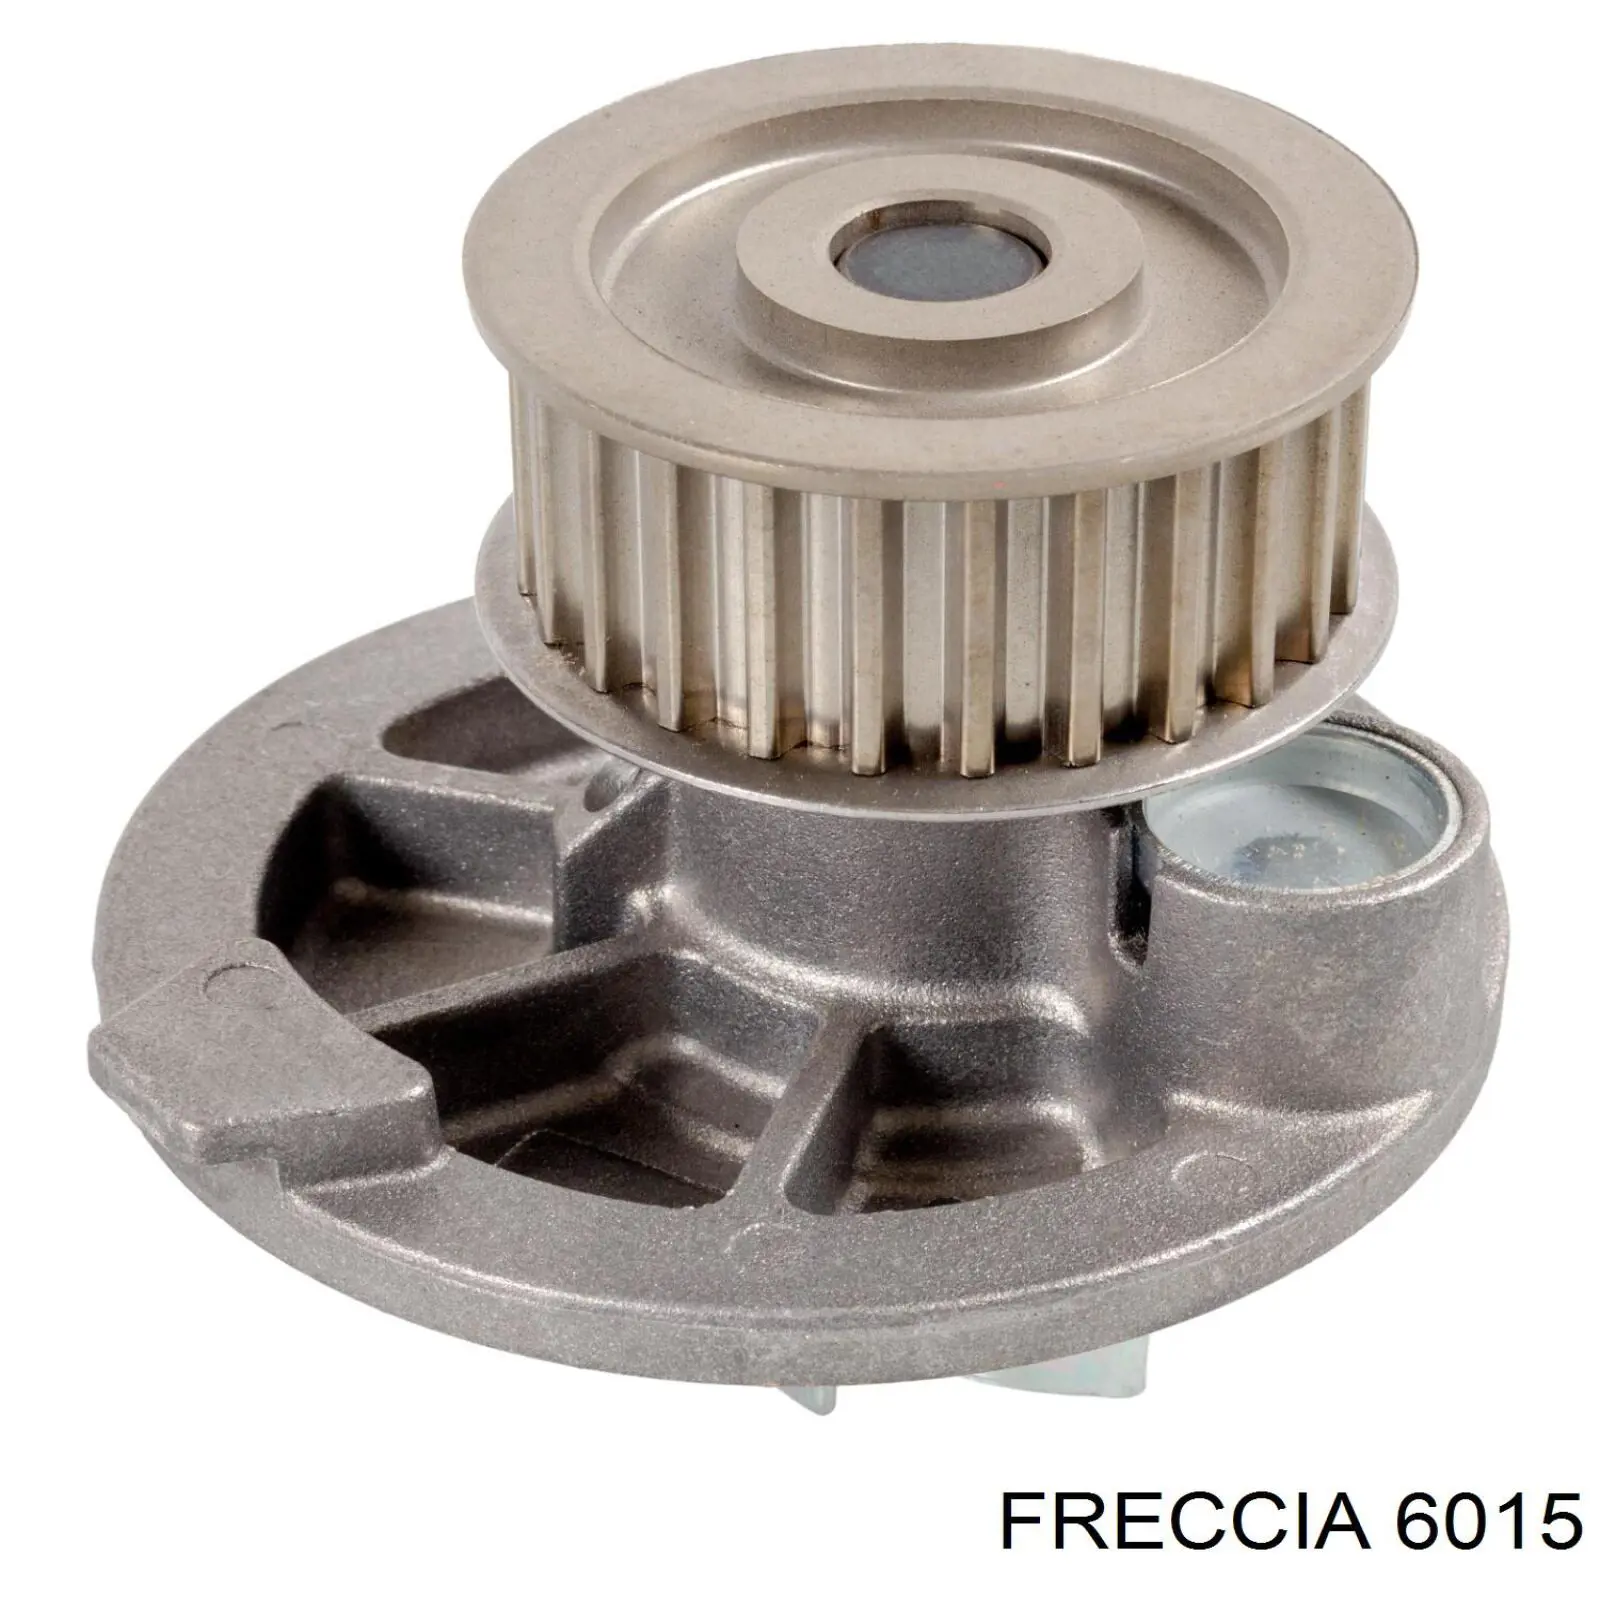 6015 Freccia впускной клапан